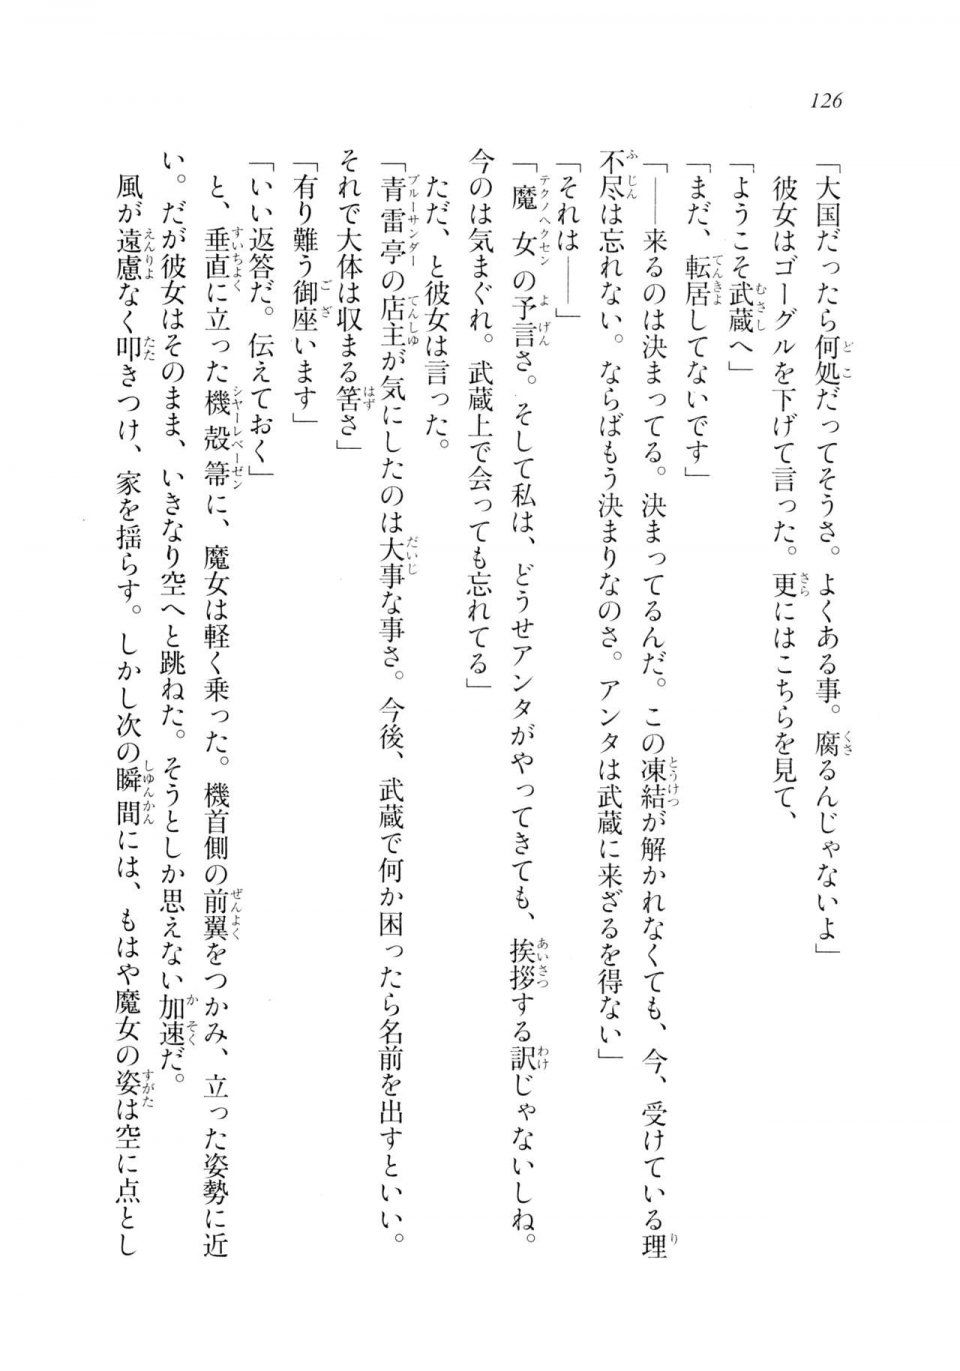 Kyoukai Senjou no Horizon LN Sidestory Vol 2 - Photo #124